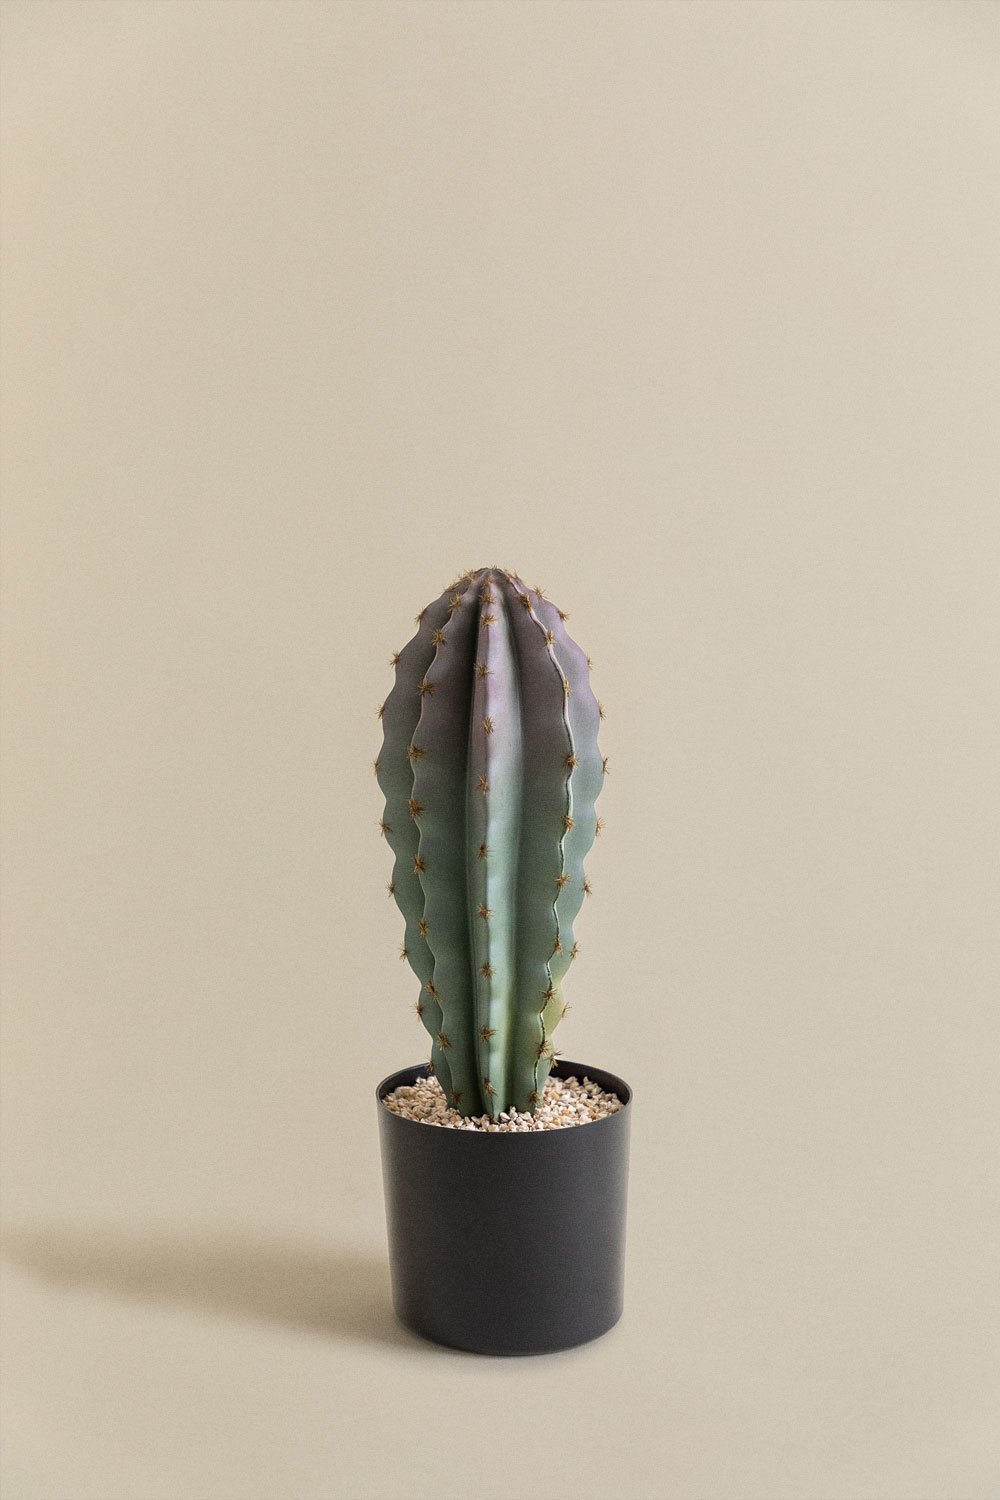 Cactus Kunst Stenocereus 37 cm, galerij beeld 1